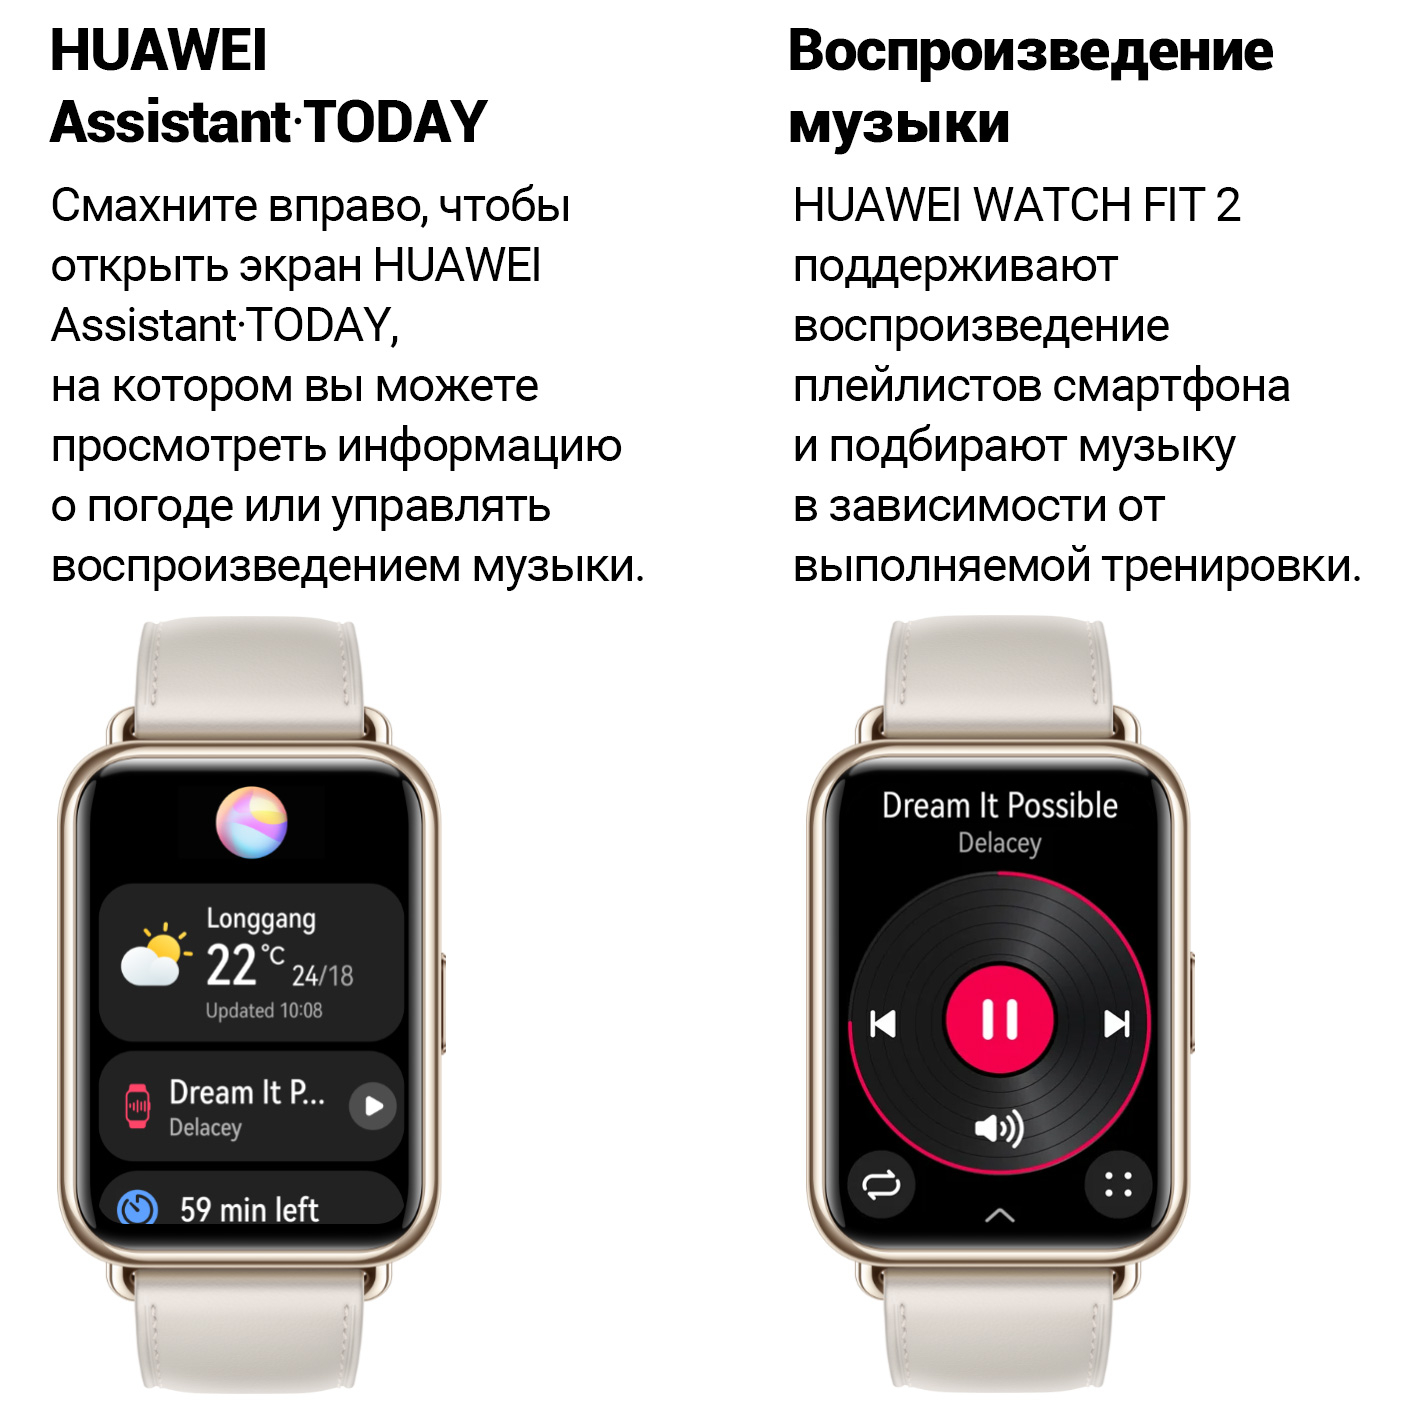 Хуавей вотч программа. Смарт часы Хуавей фит 2. Часы Huawei watch Fit 2. Смарт часы Хуавей вотч фит. Смарт-часы Huawei Fit 2 Classic Edition.